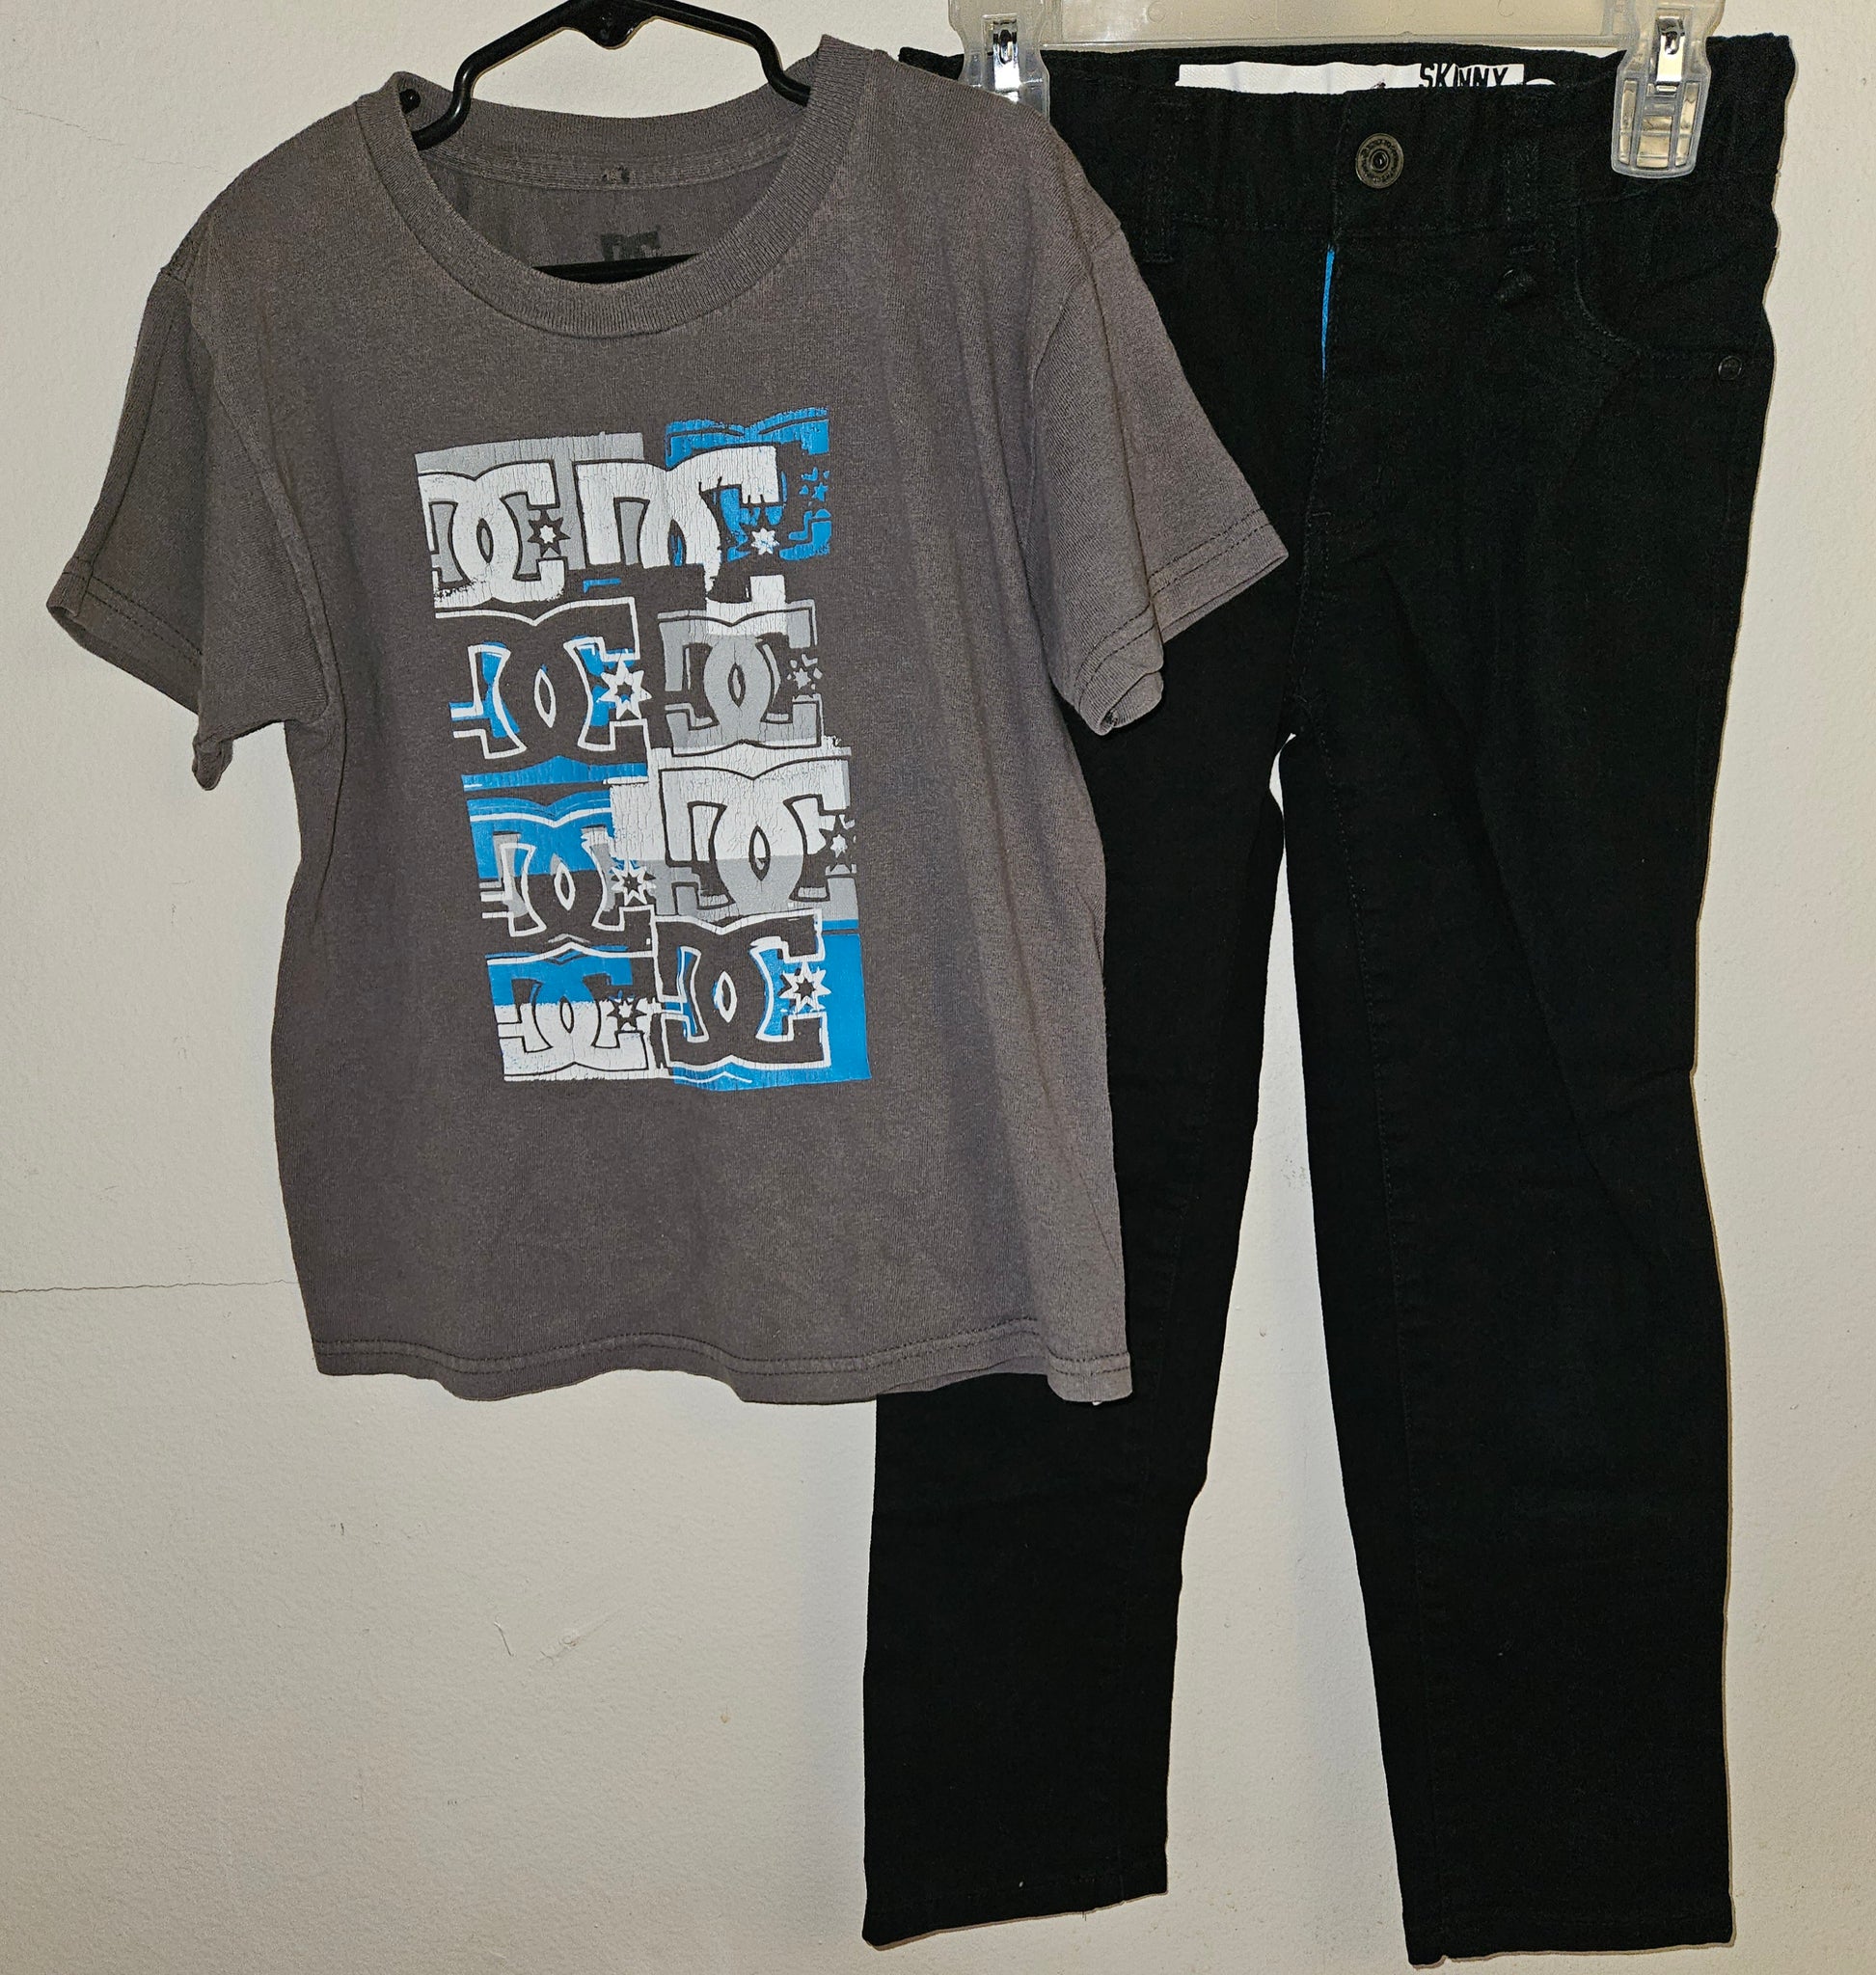 Size 7 / Large 2-Pc DC Gray Shirt & SHAWN WHITE Black Jeans